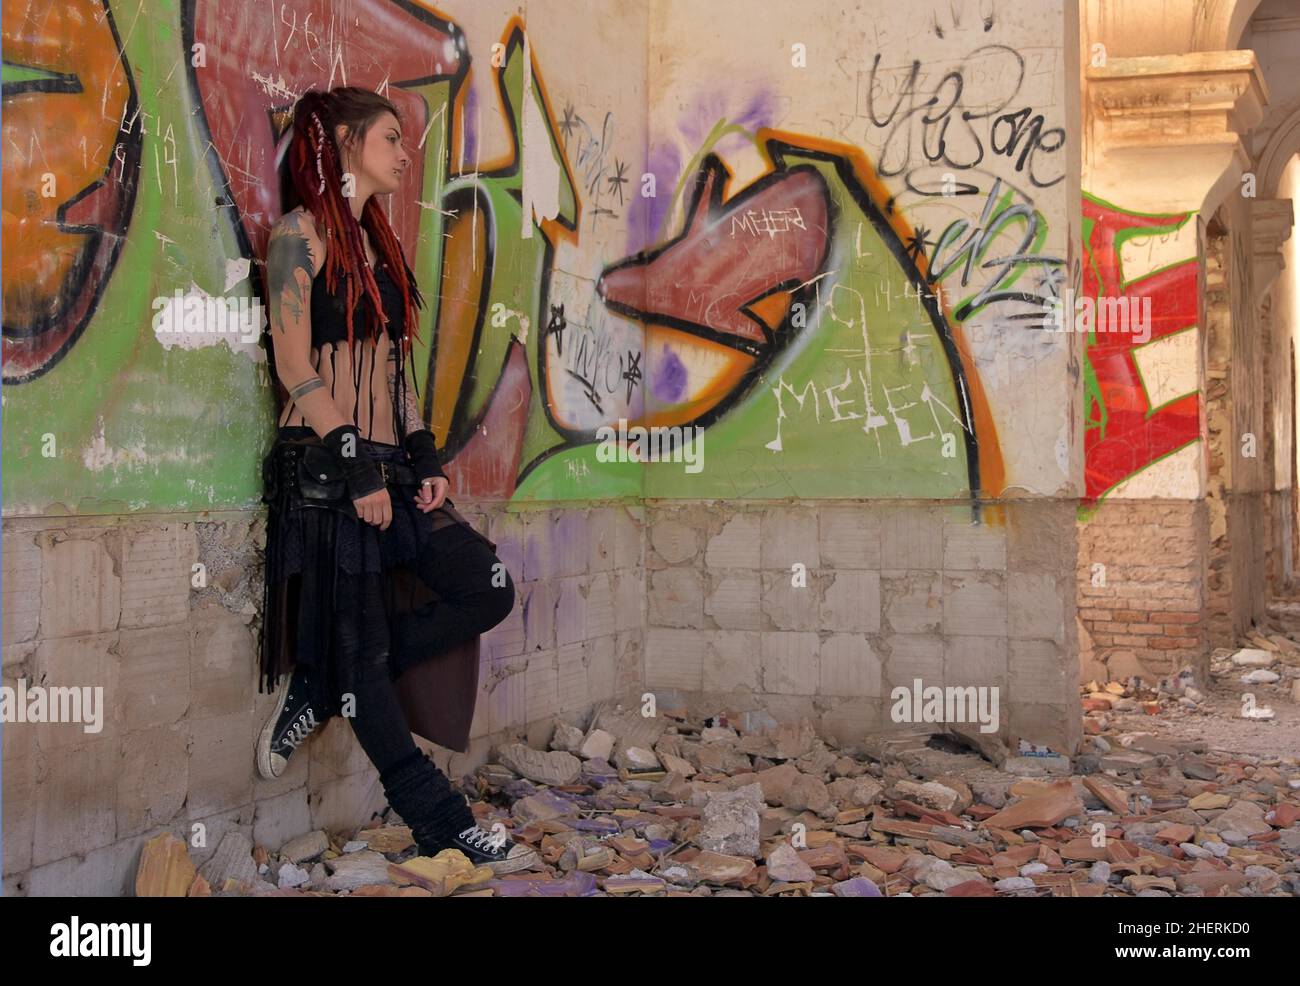 Giovane donna con tatuaggi e lucchetti si erge contro il muro con graffiti di una casa abbandonata Foto Stock